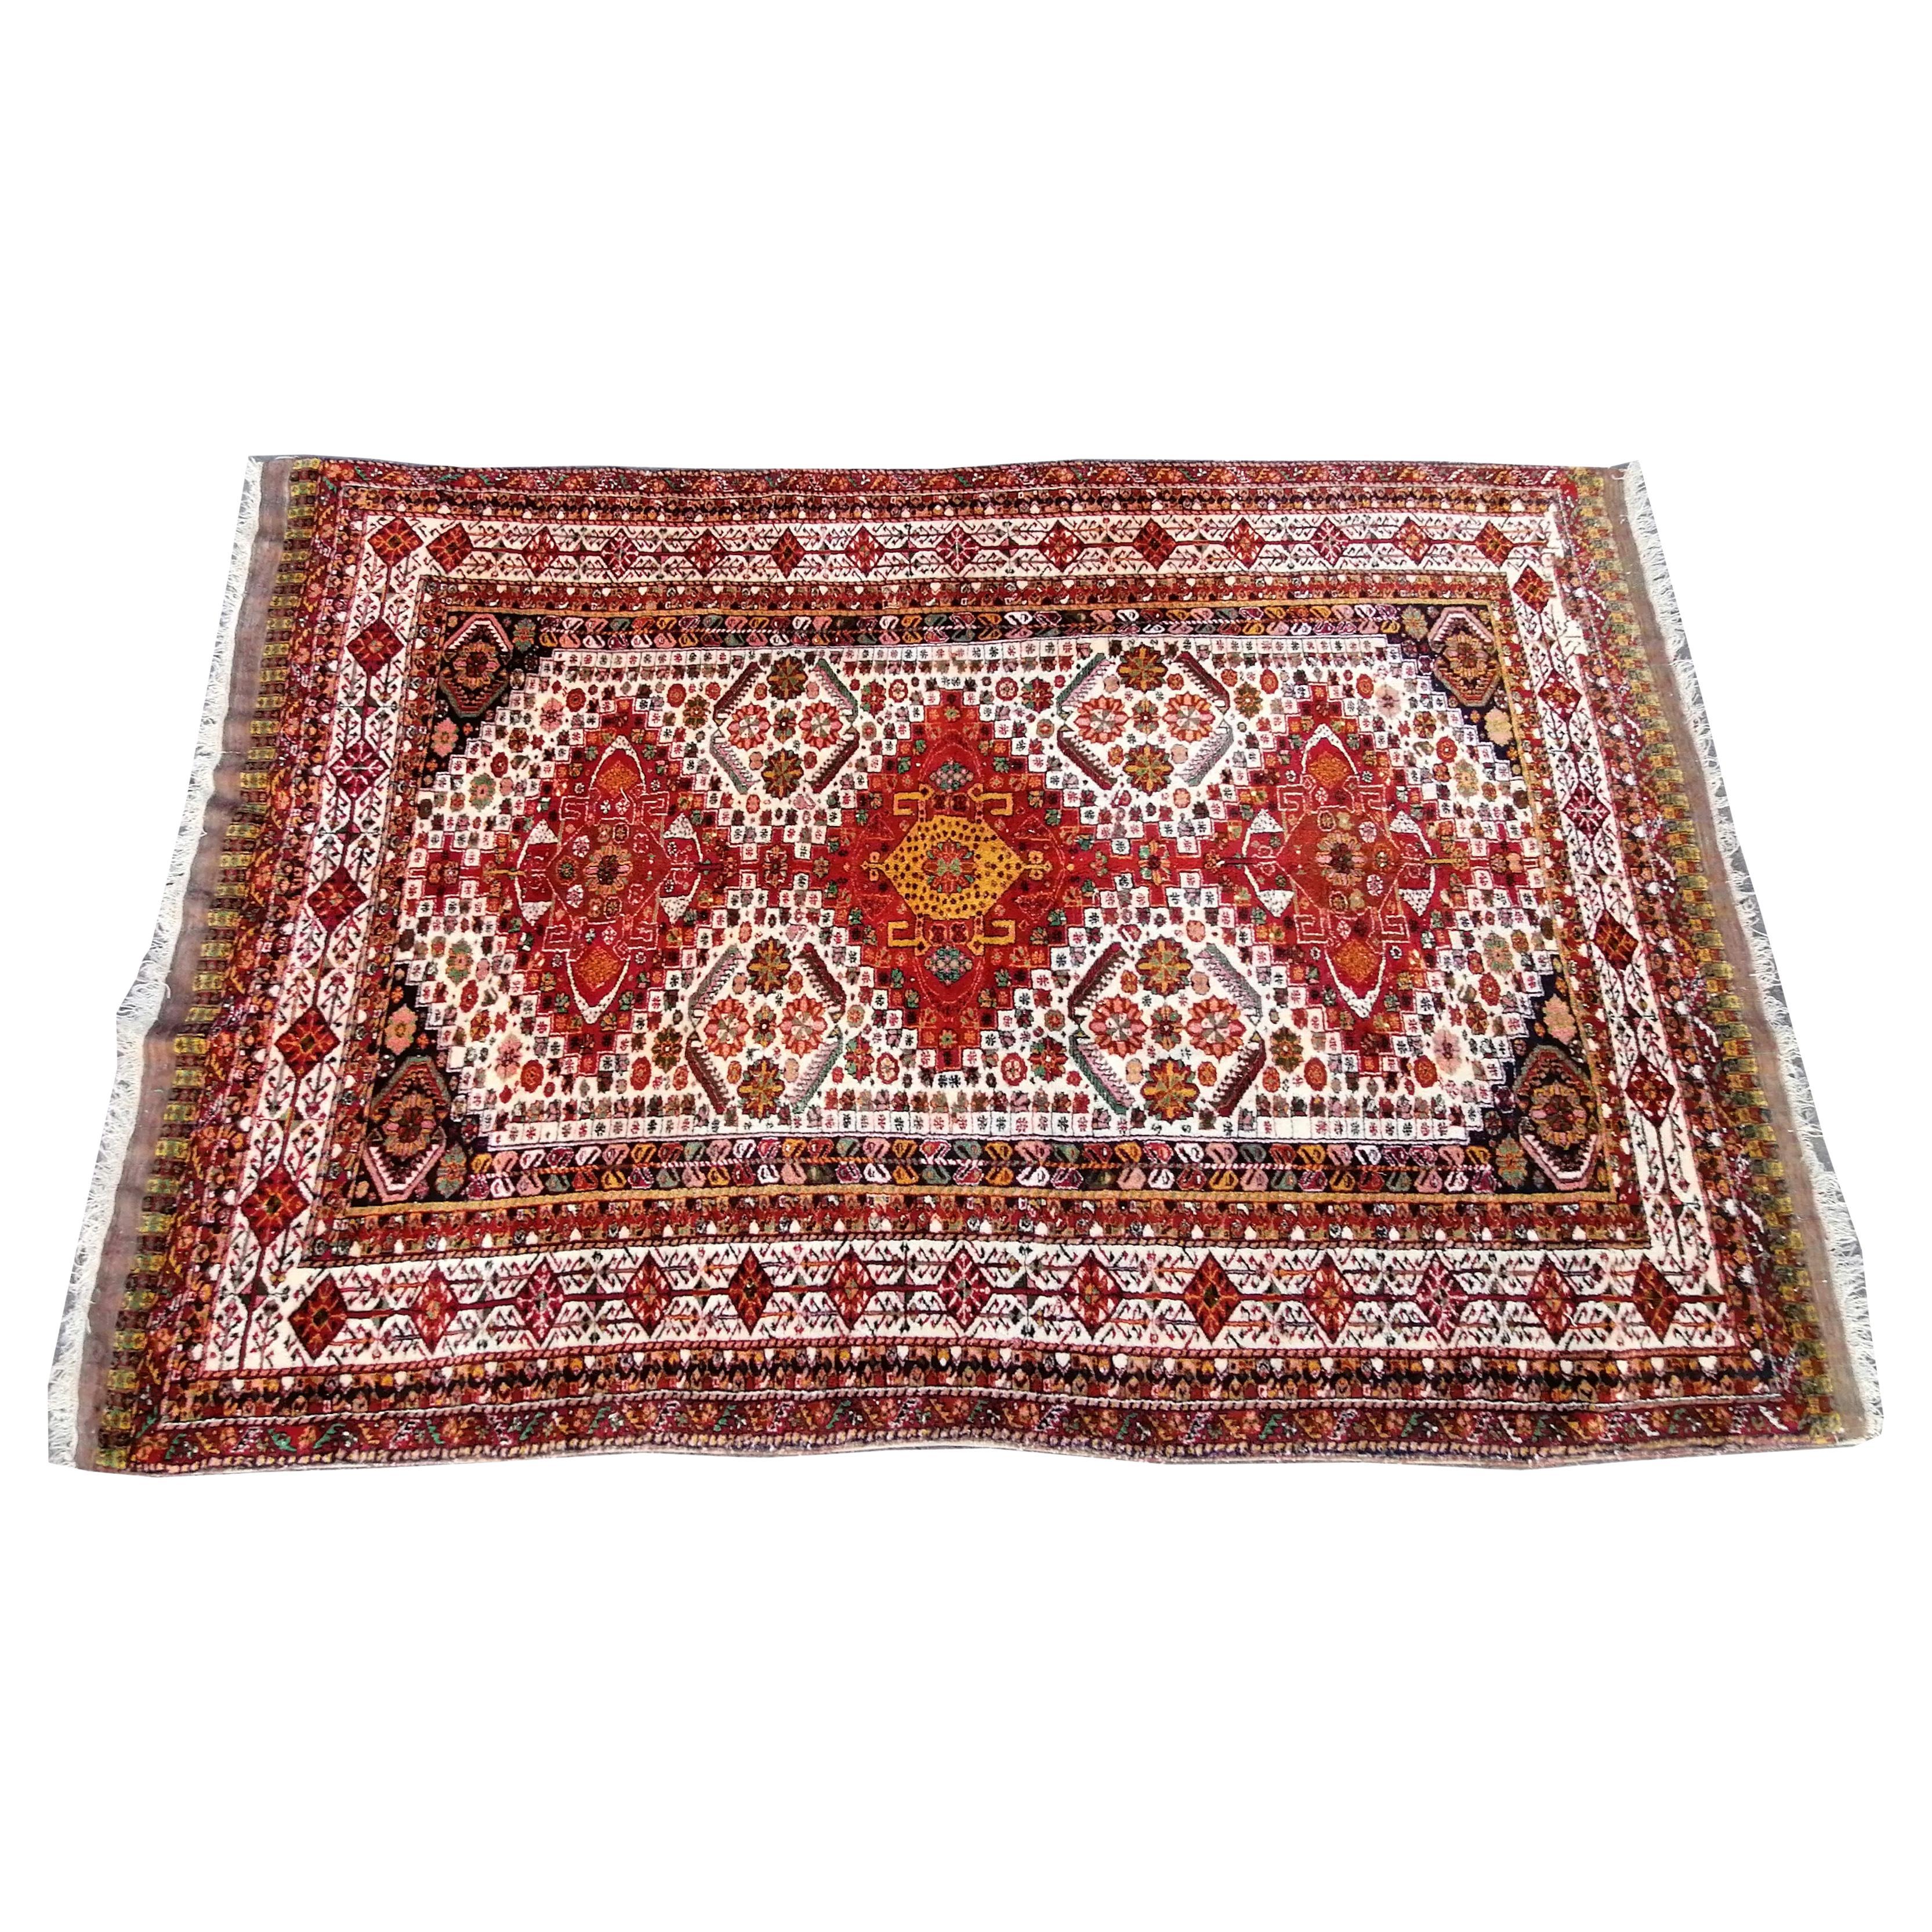 1069 - Goutchan Carpet For Sale